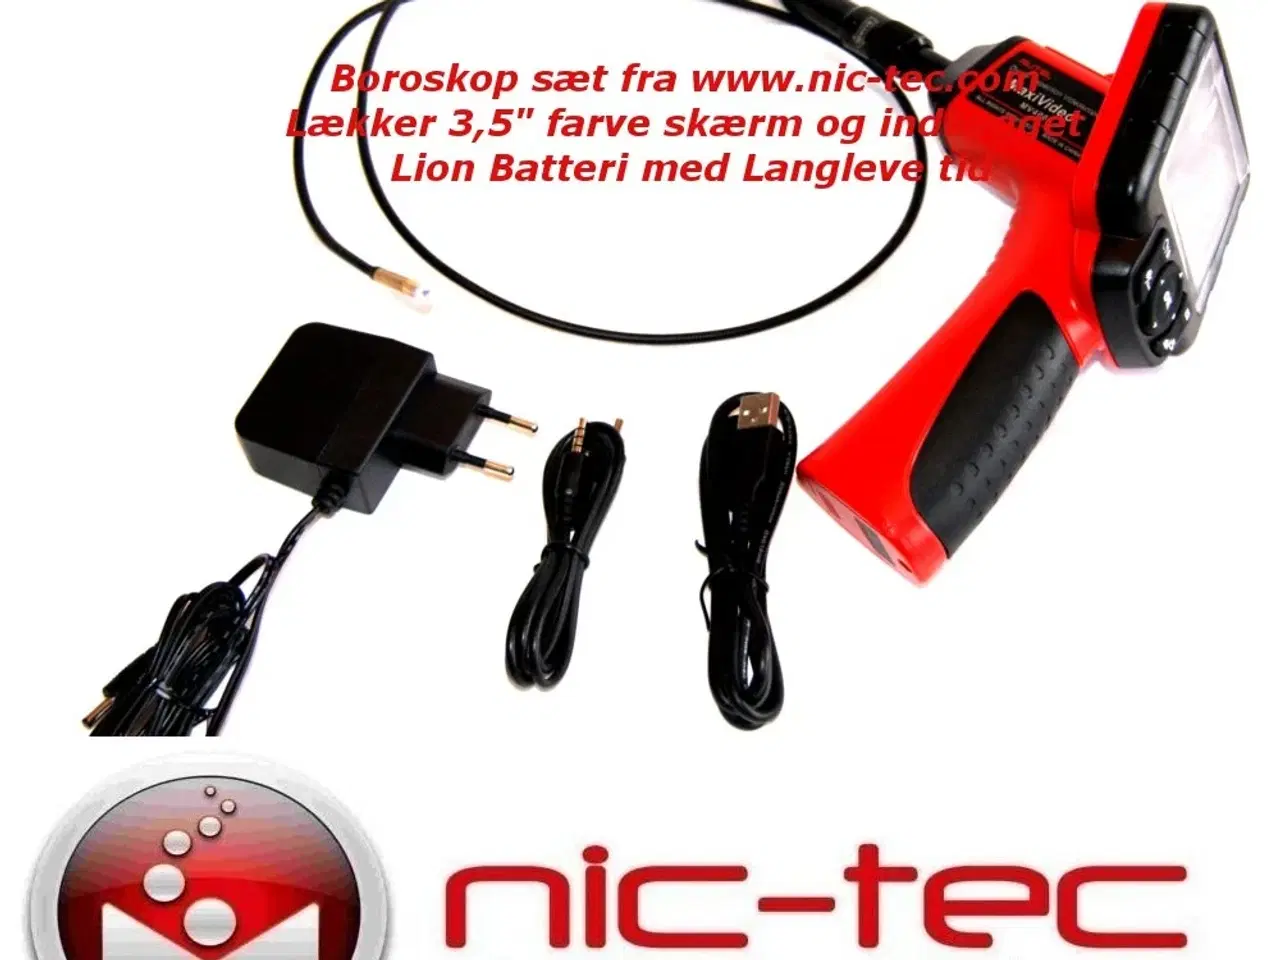 Billede 3 - Videoscope / Borescope / Endoscope med 3.5" farve skærm og Lion batteri & video out